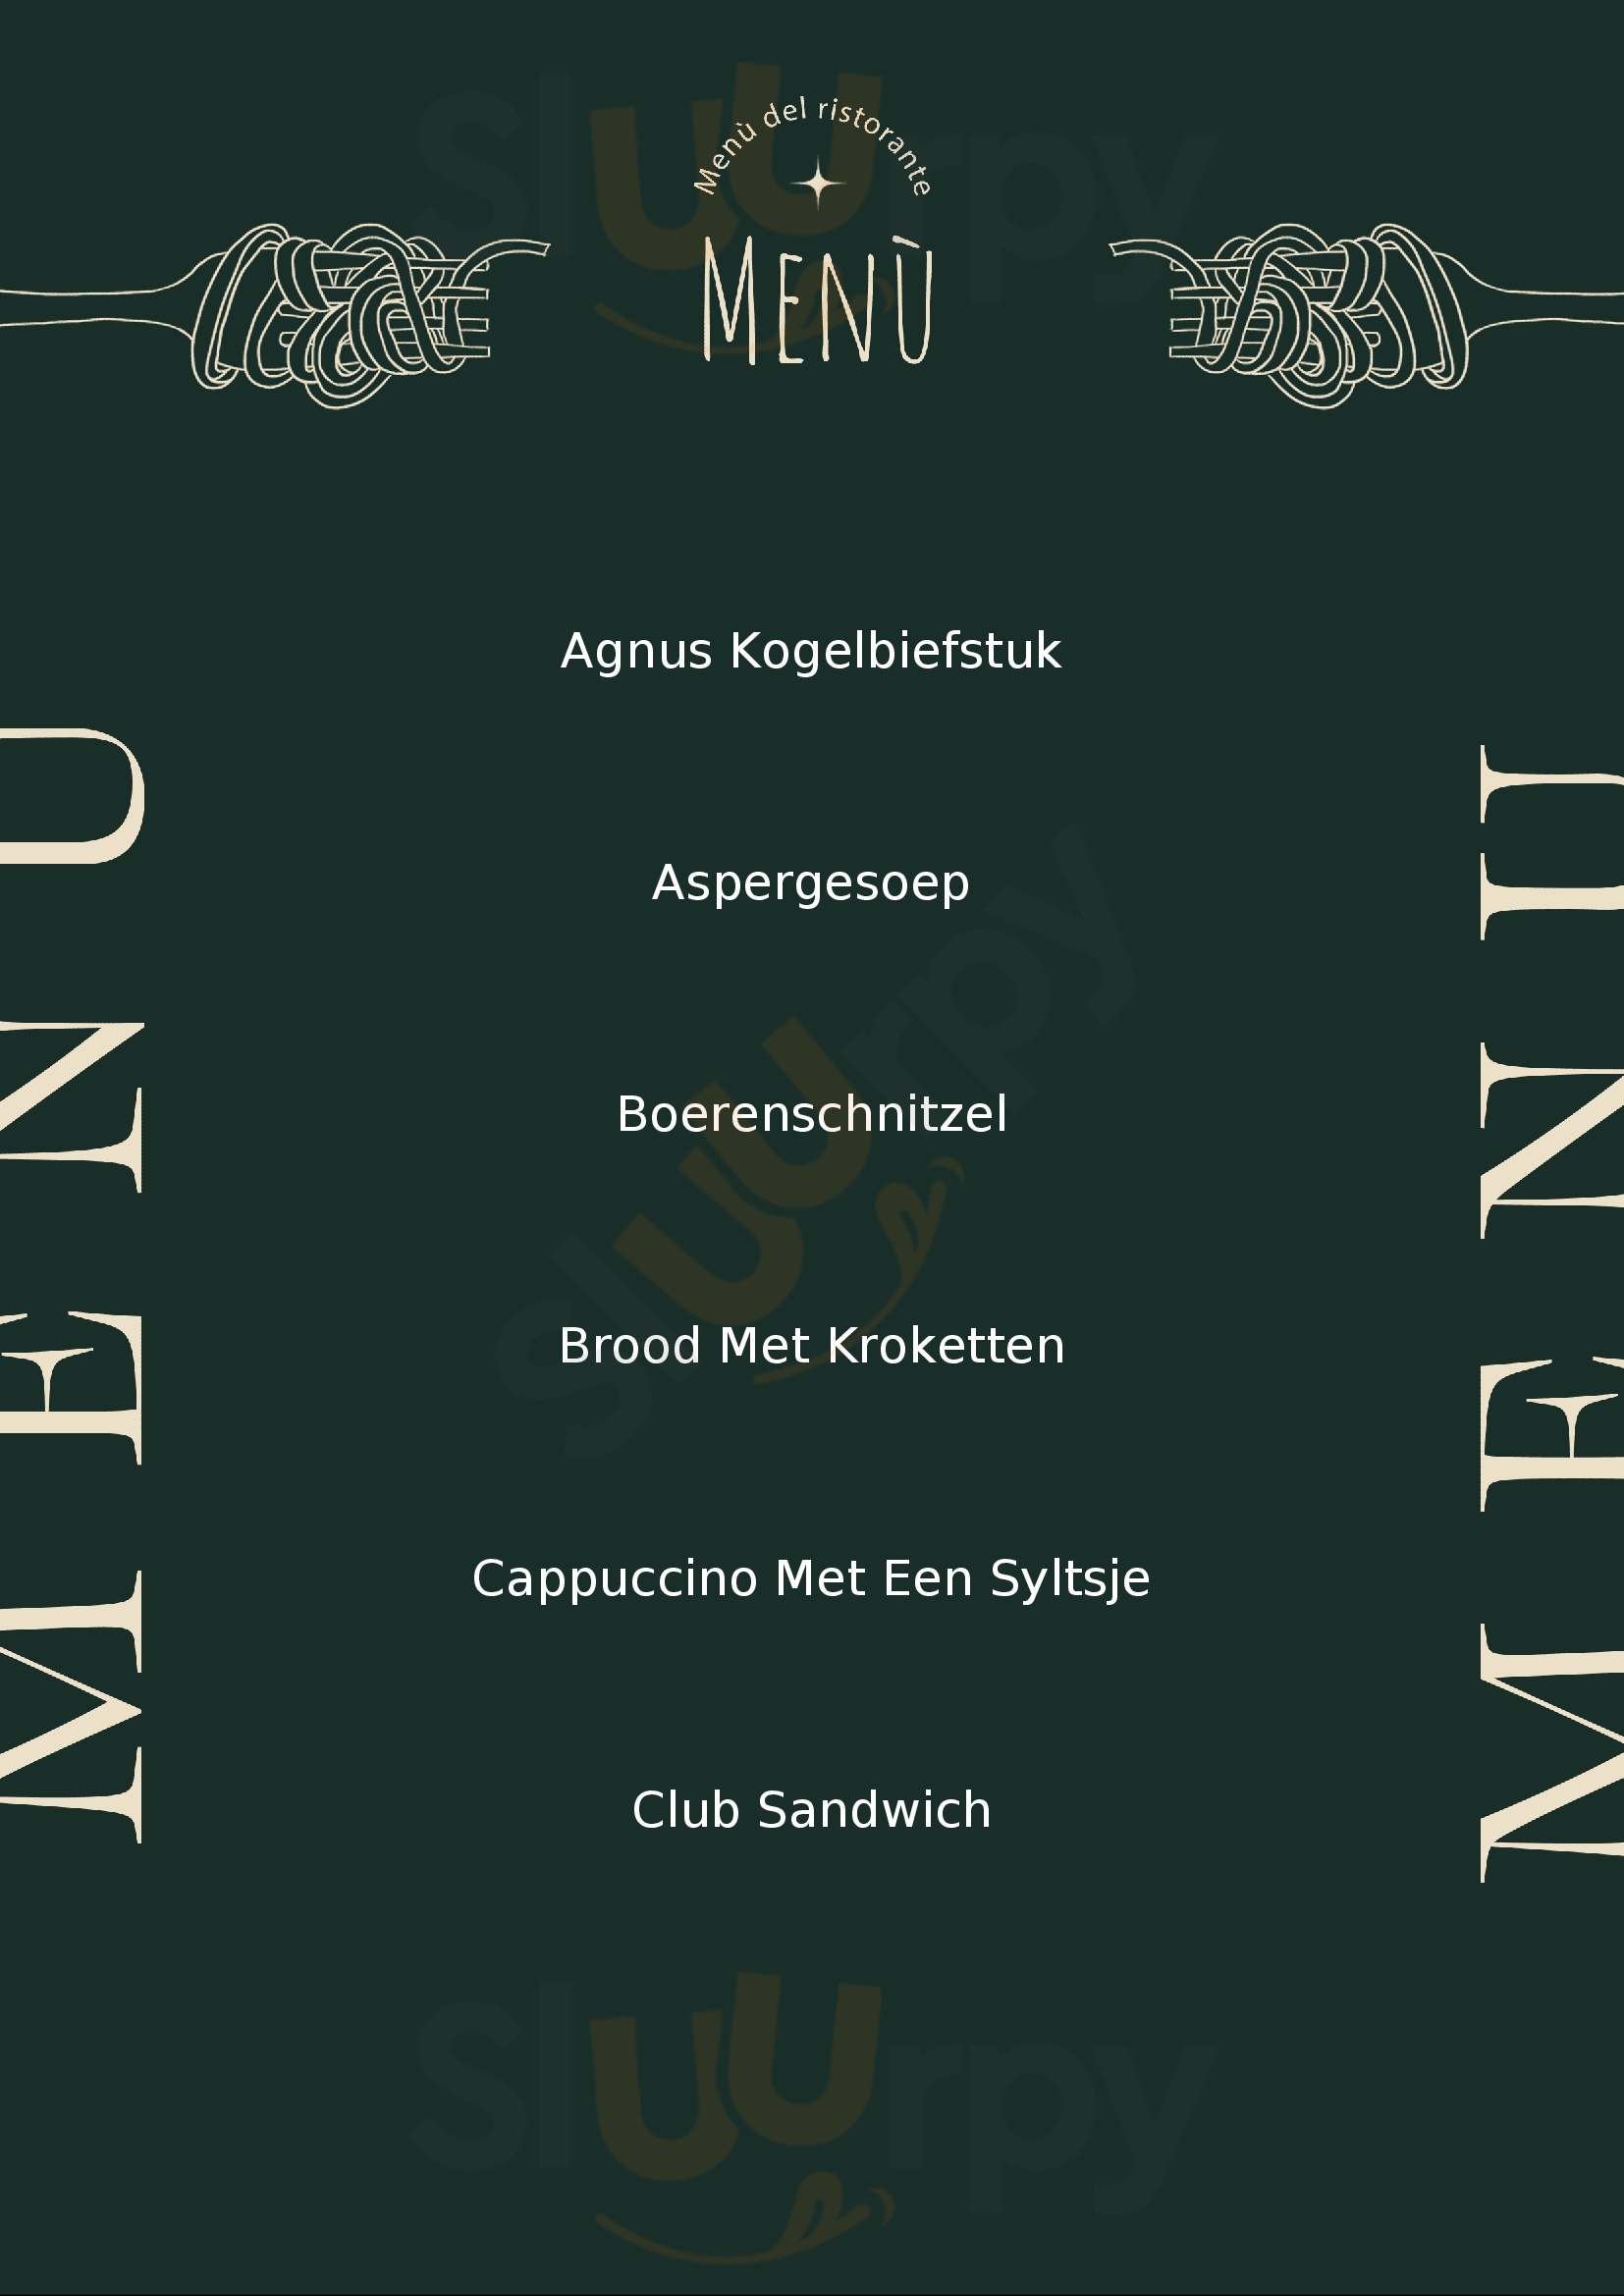 Zonneweelde Cafe-restaurant Hoorn Menu - 1